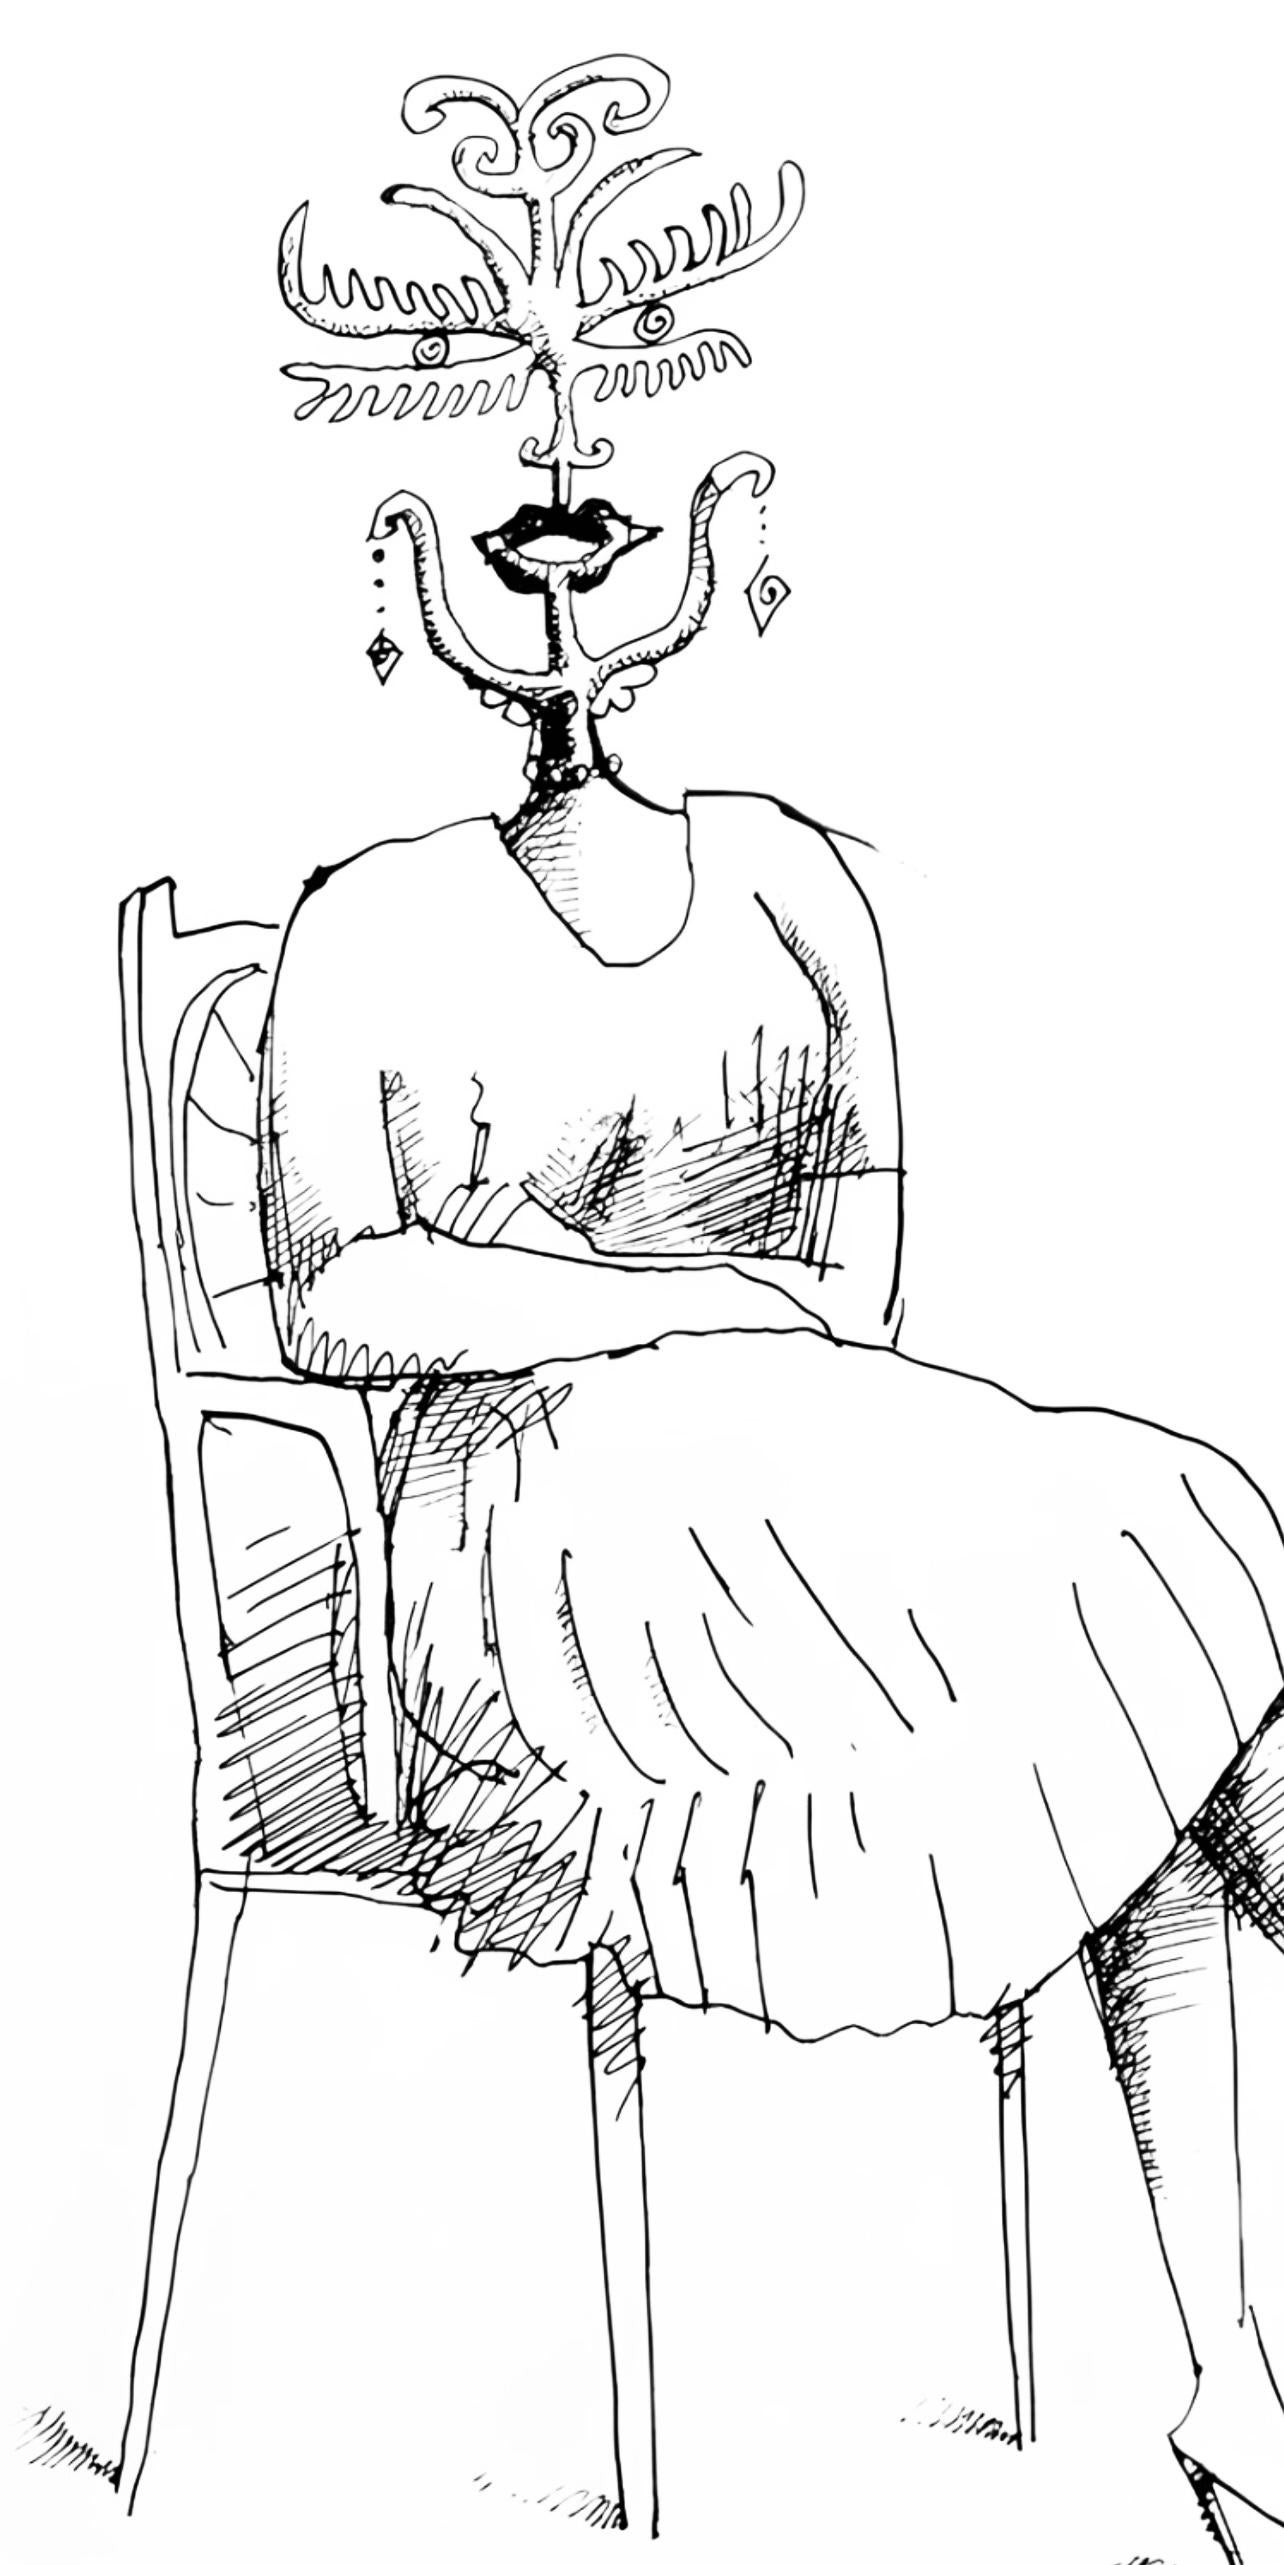 Steinberg, Illustration, Derrière le miroir (d'après) - Print de Saul Steinberg